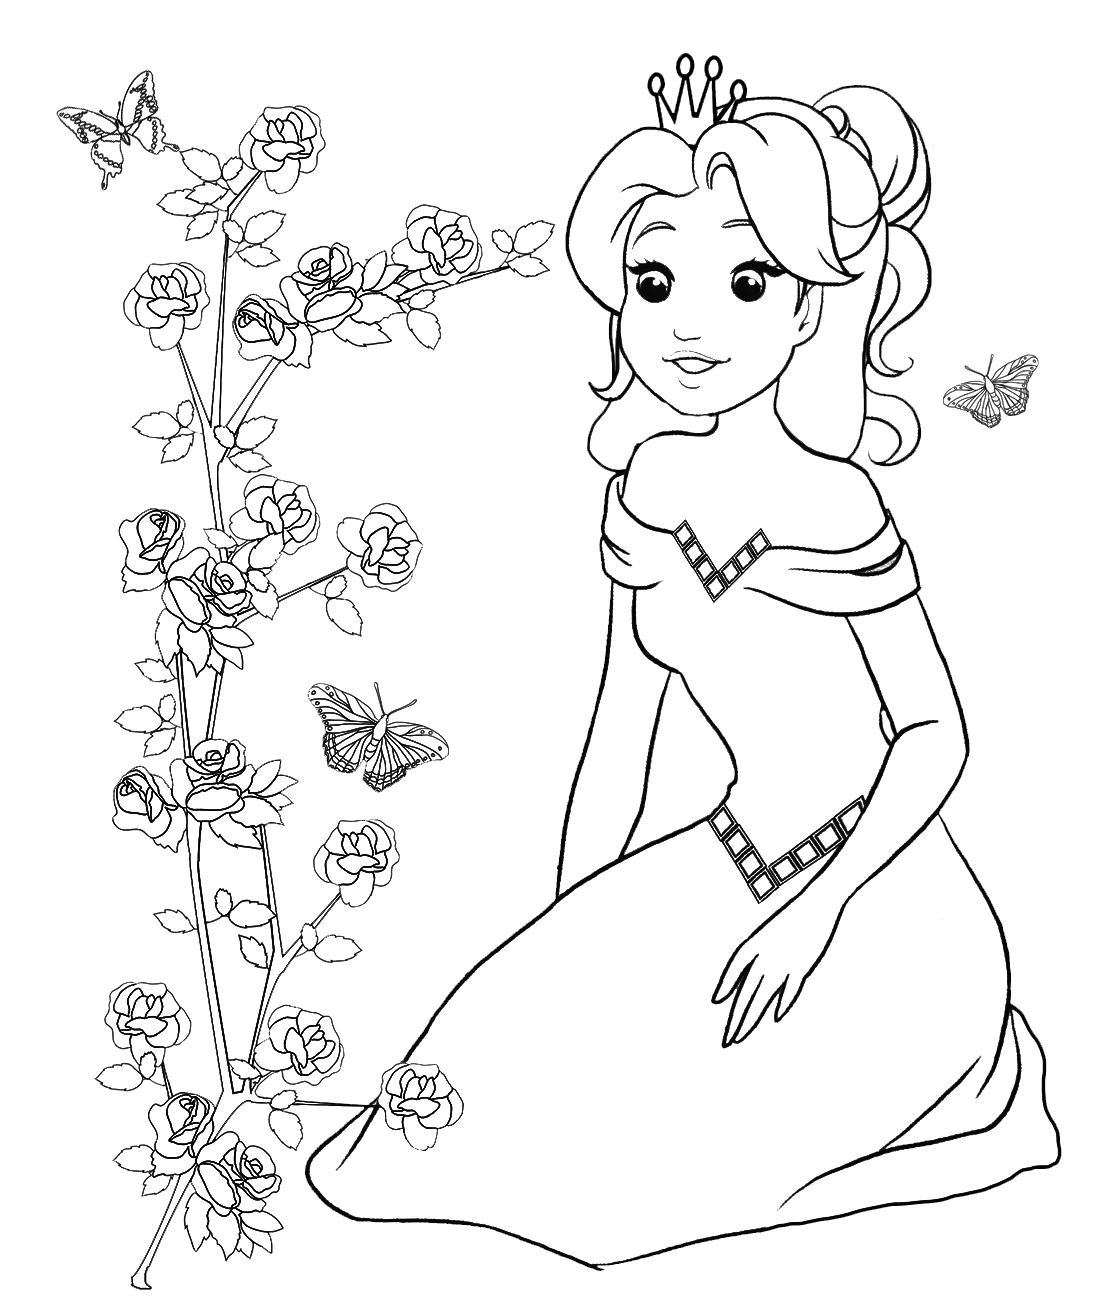 Princess looking at rose bush